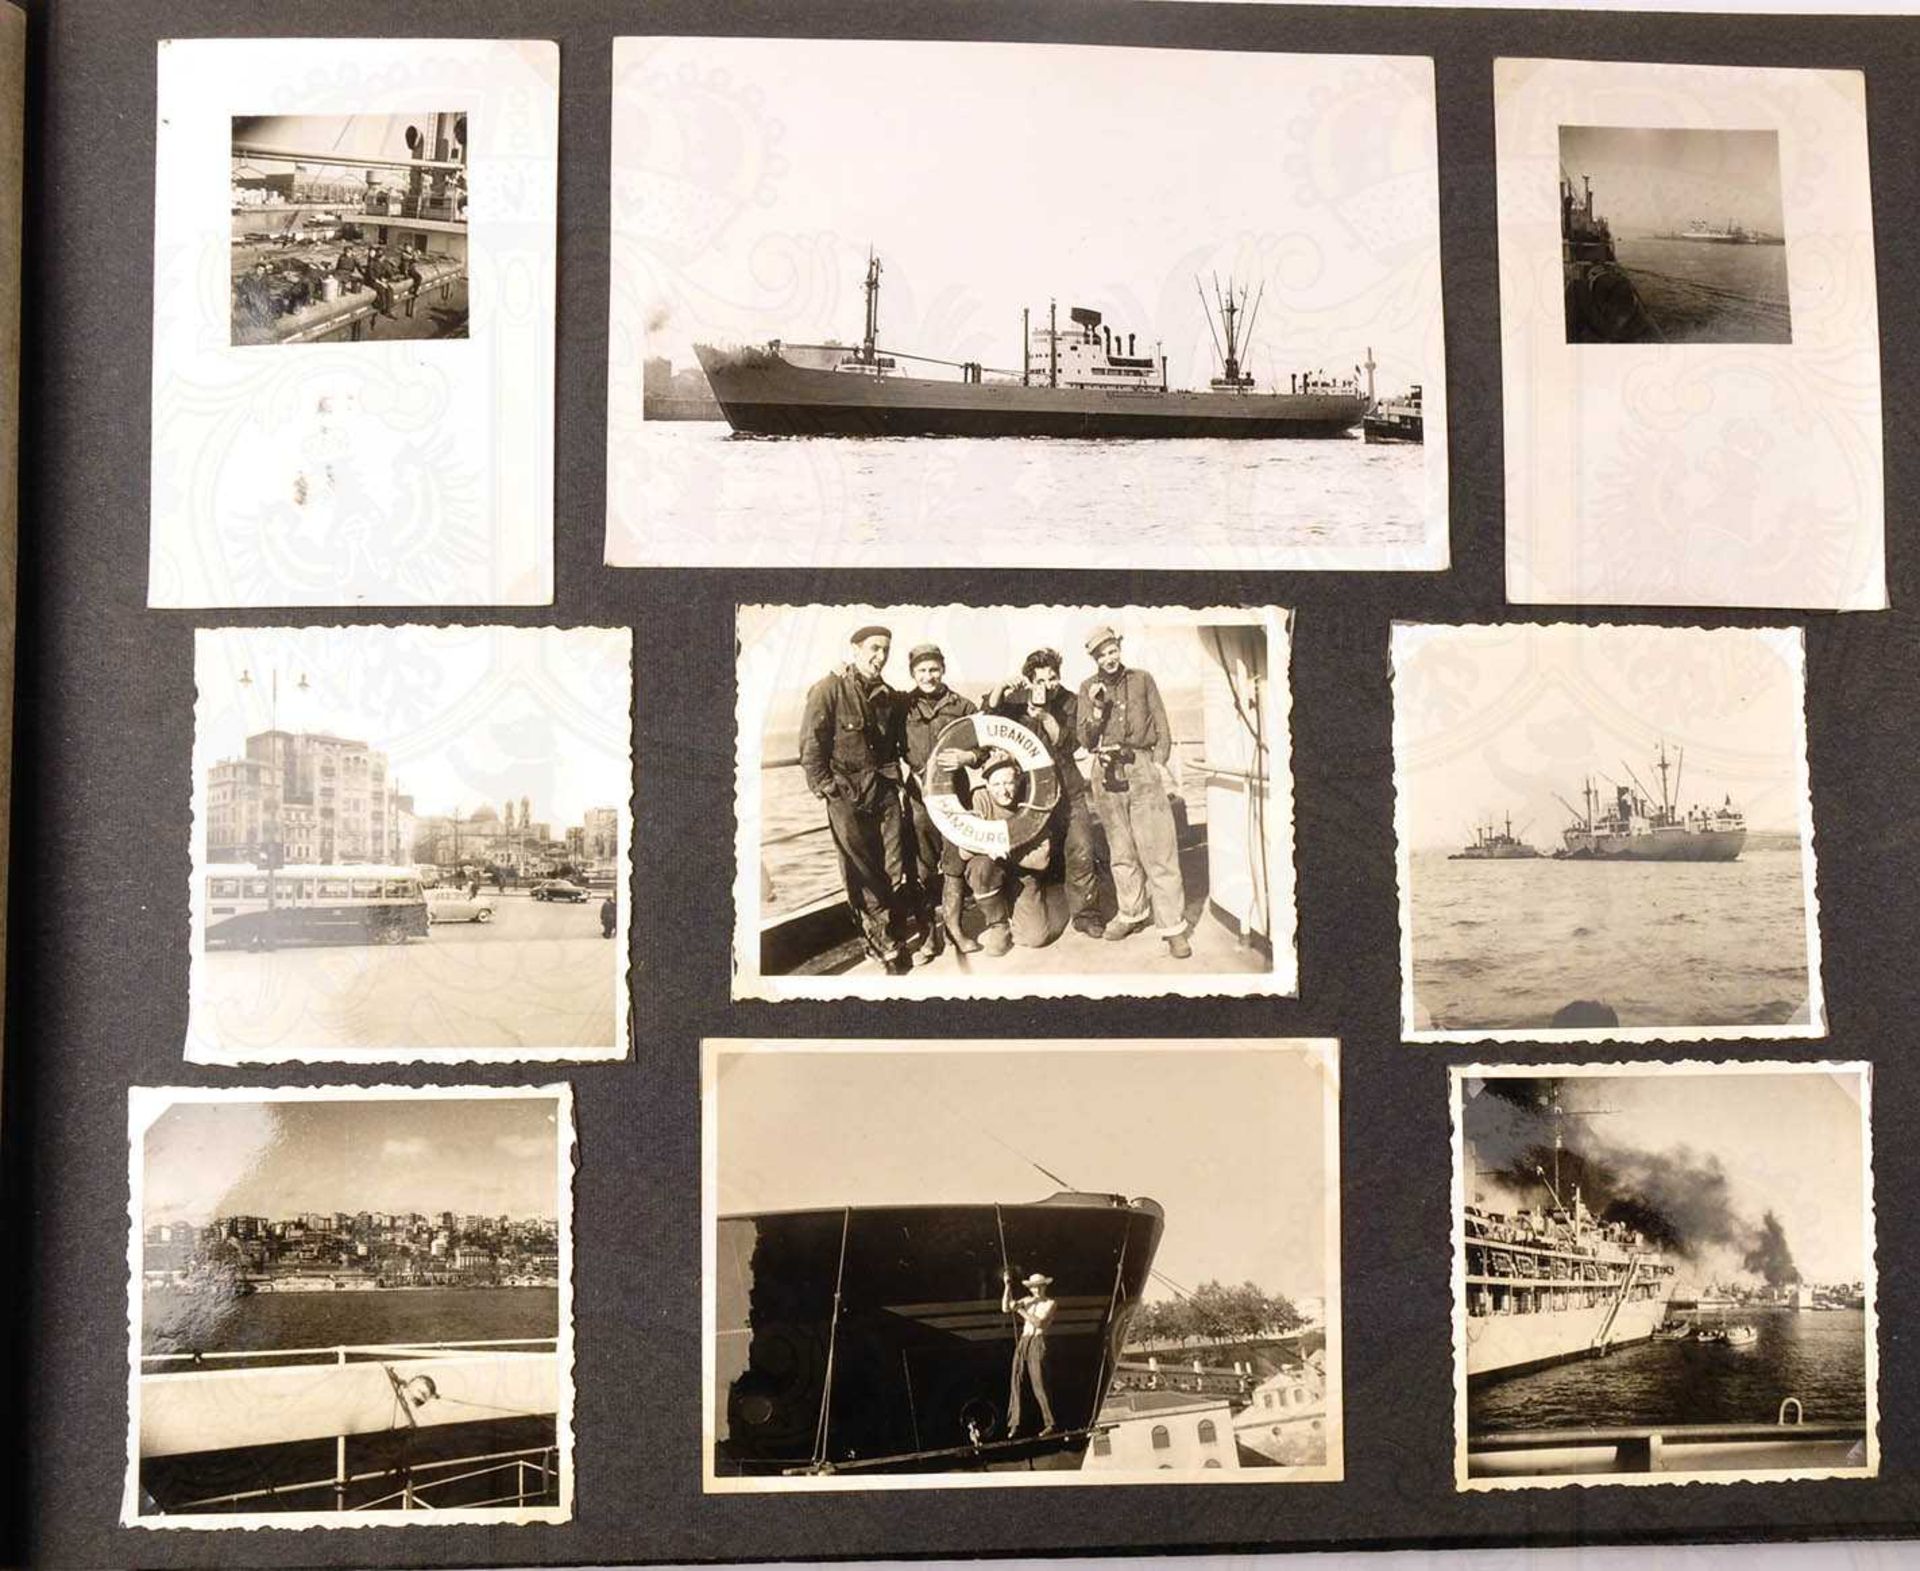 FOTOALBUM EINES BESATZUNGSMITGLIEDS, des deutschen Frachtschiffes Libanon, über 170 Aufn., um - Bild 2 aus 5